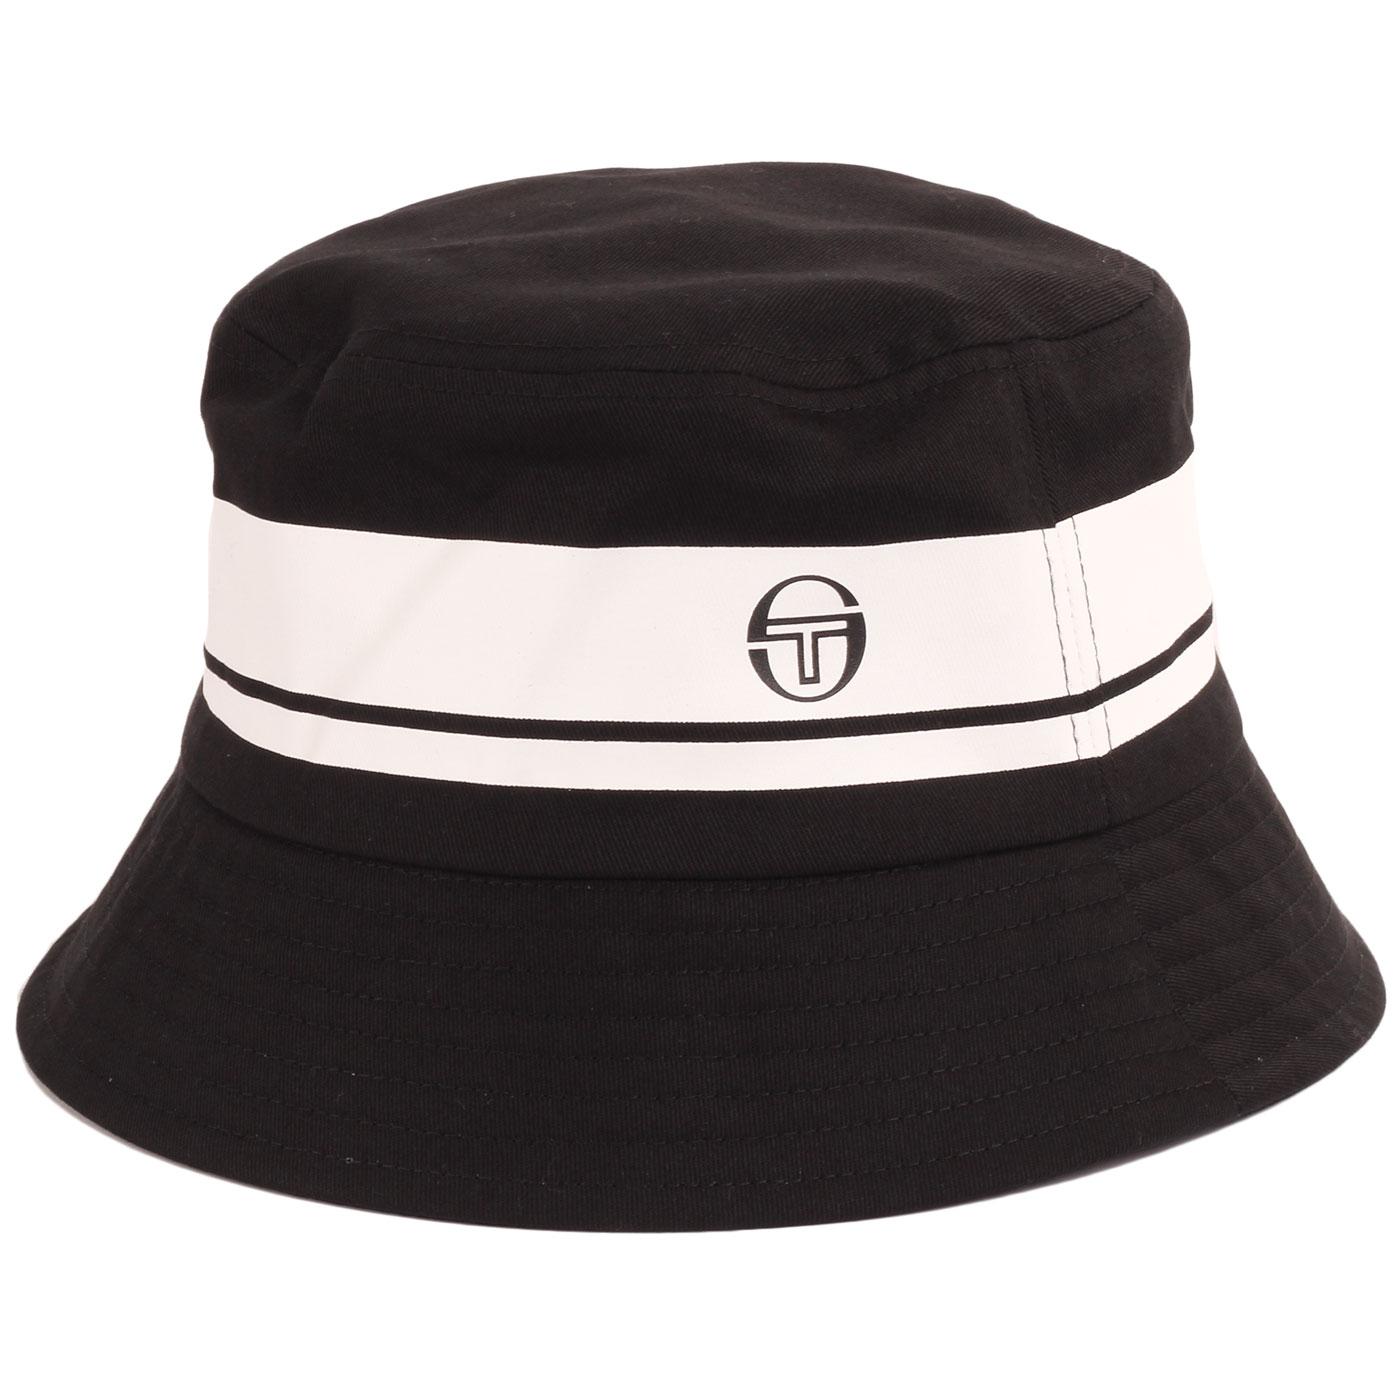 SERGIO TACCHINI Greater Retro 90s Bucket Hat in Black